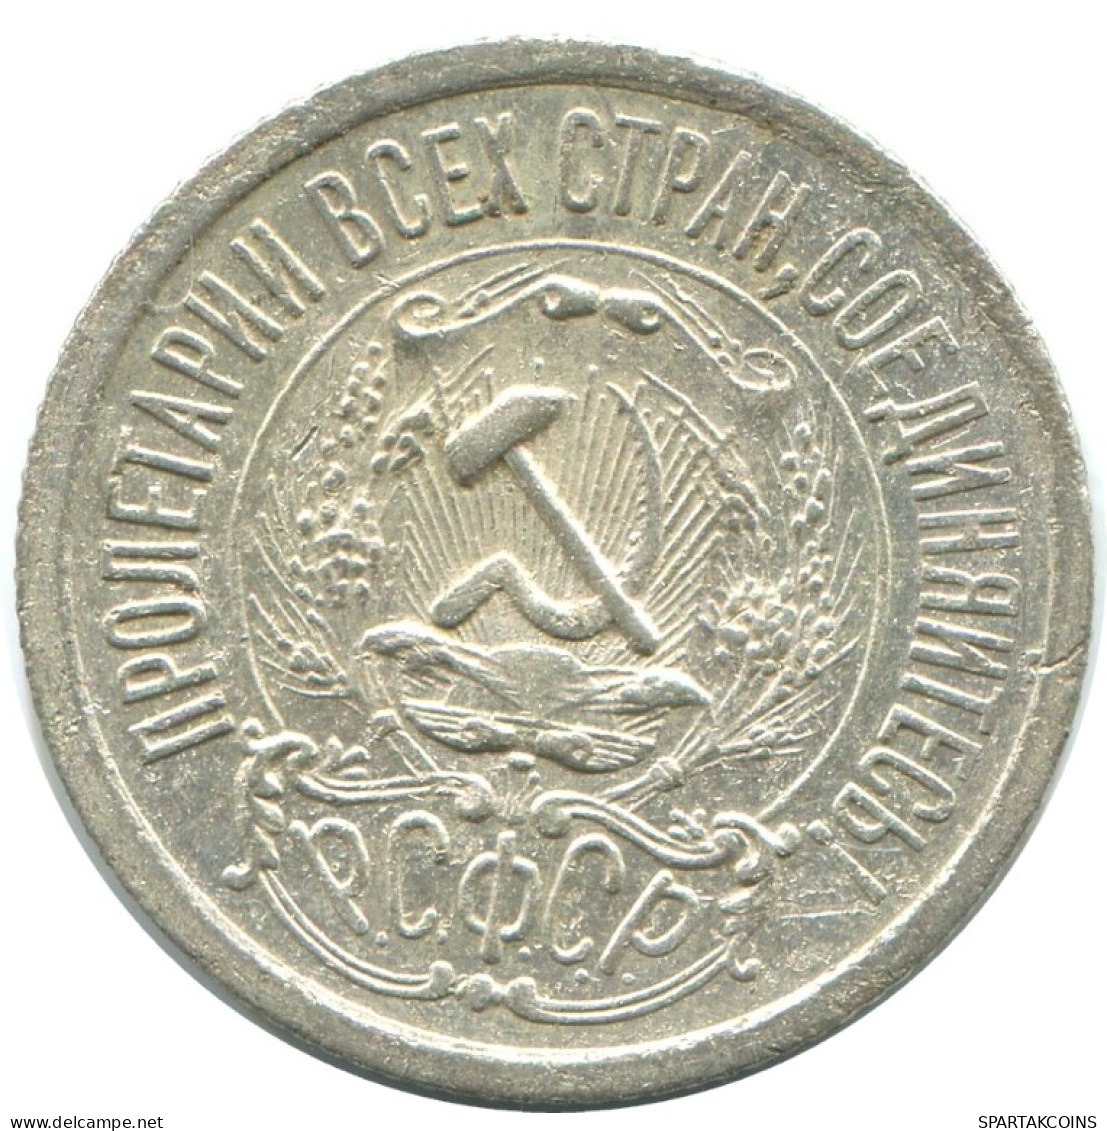 15 KOPEKS 1923 RUSSIA RSFSR SILVER Coin HIGH GRADE #AF129.4.U.A - Russland